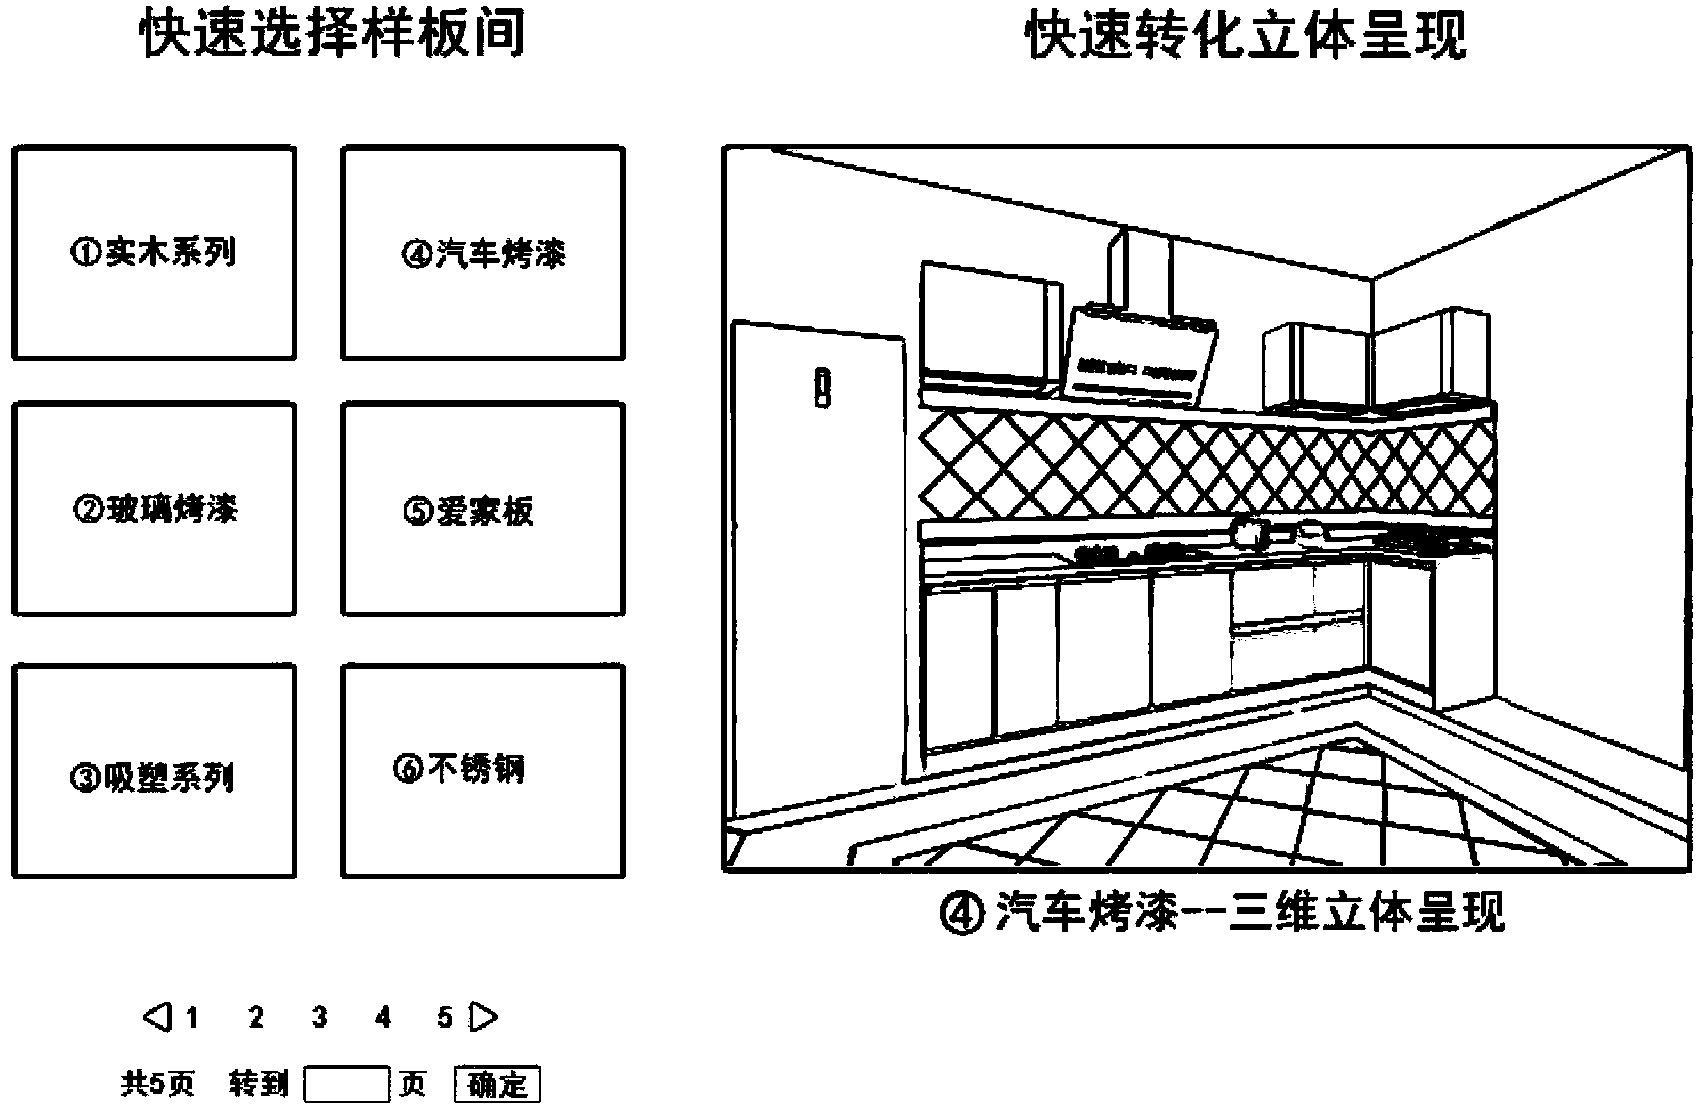 Kitchen design scheme generating method